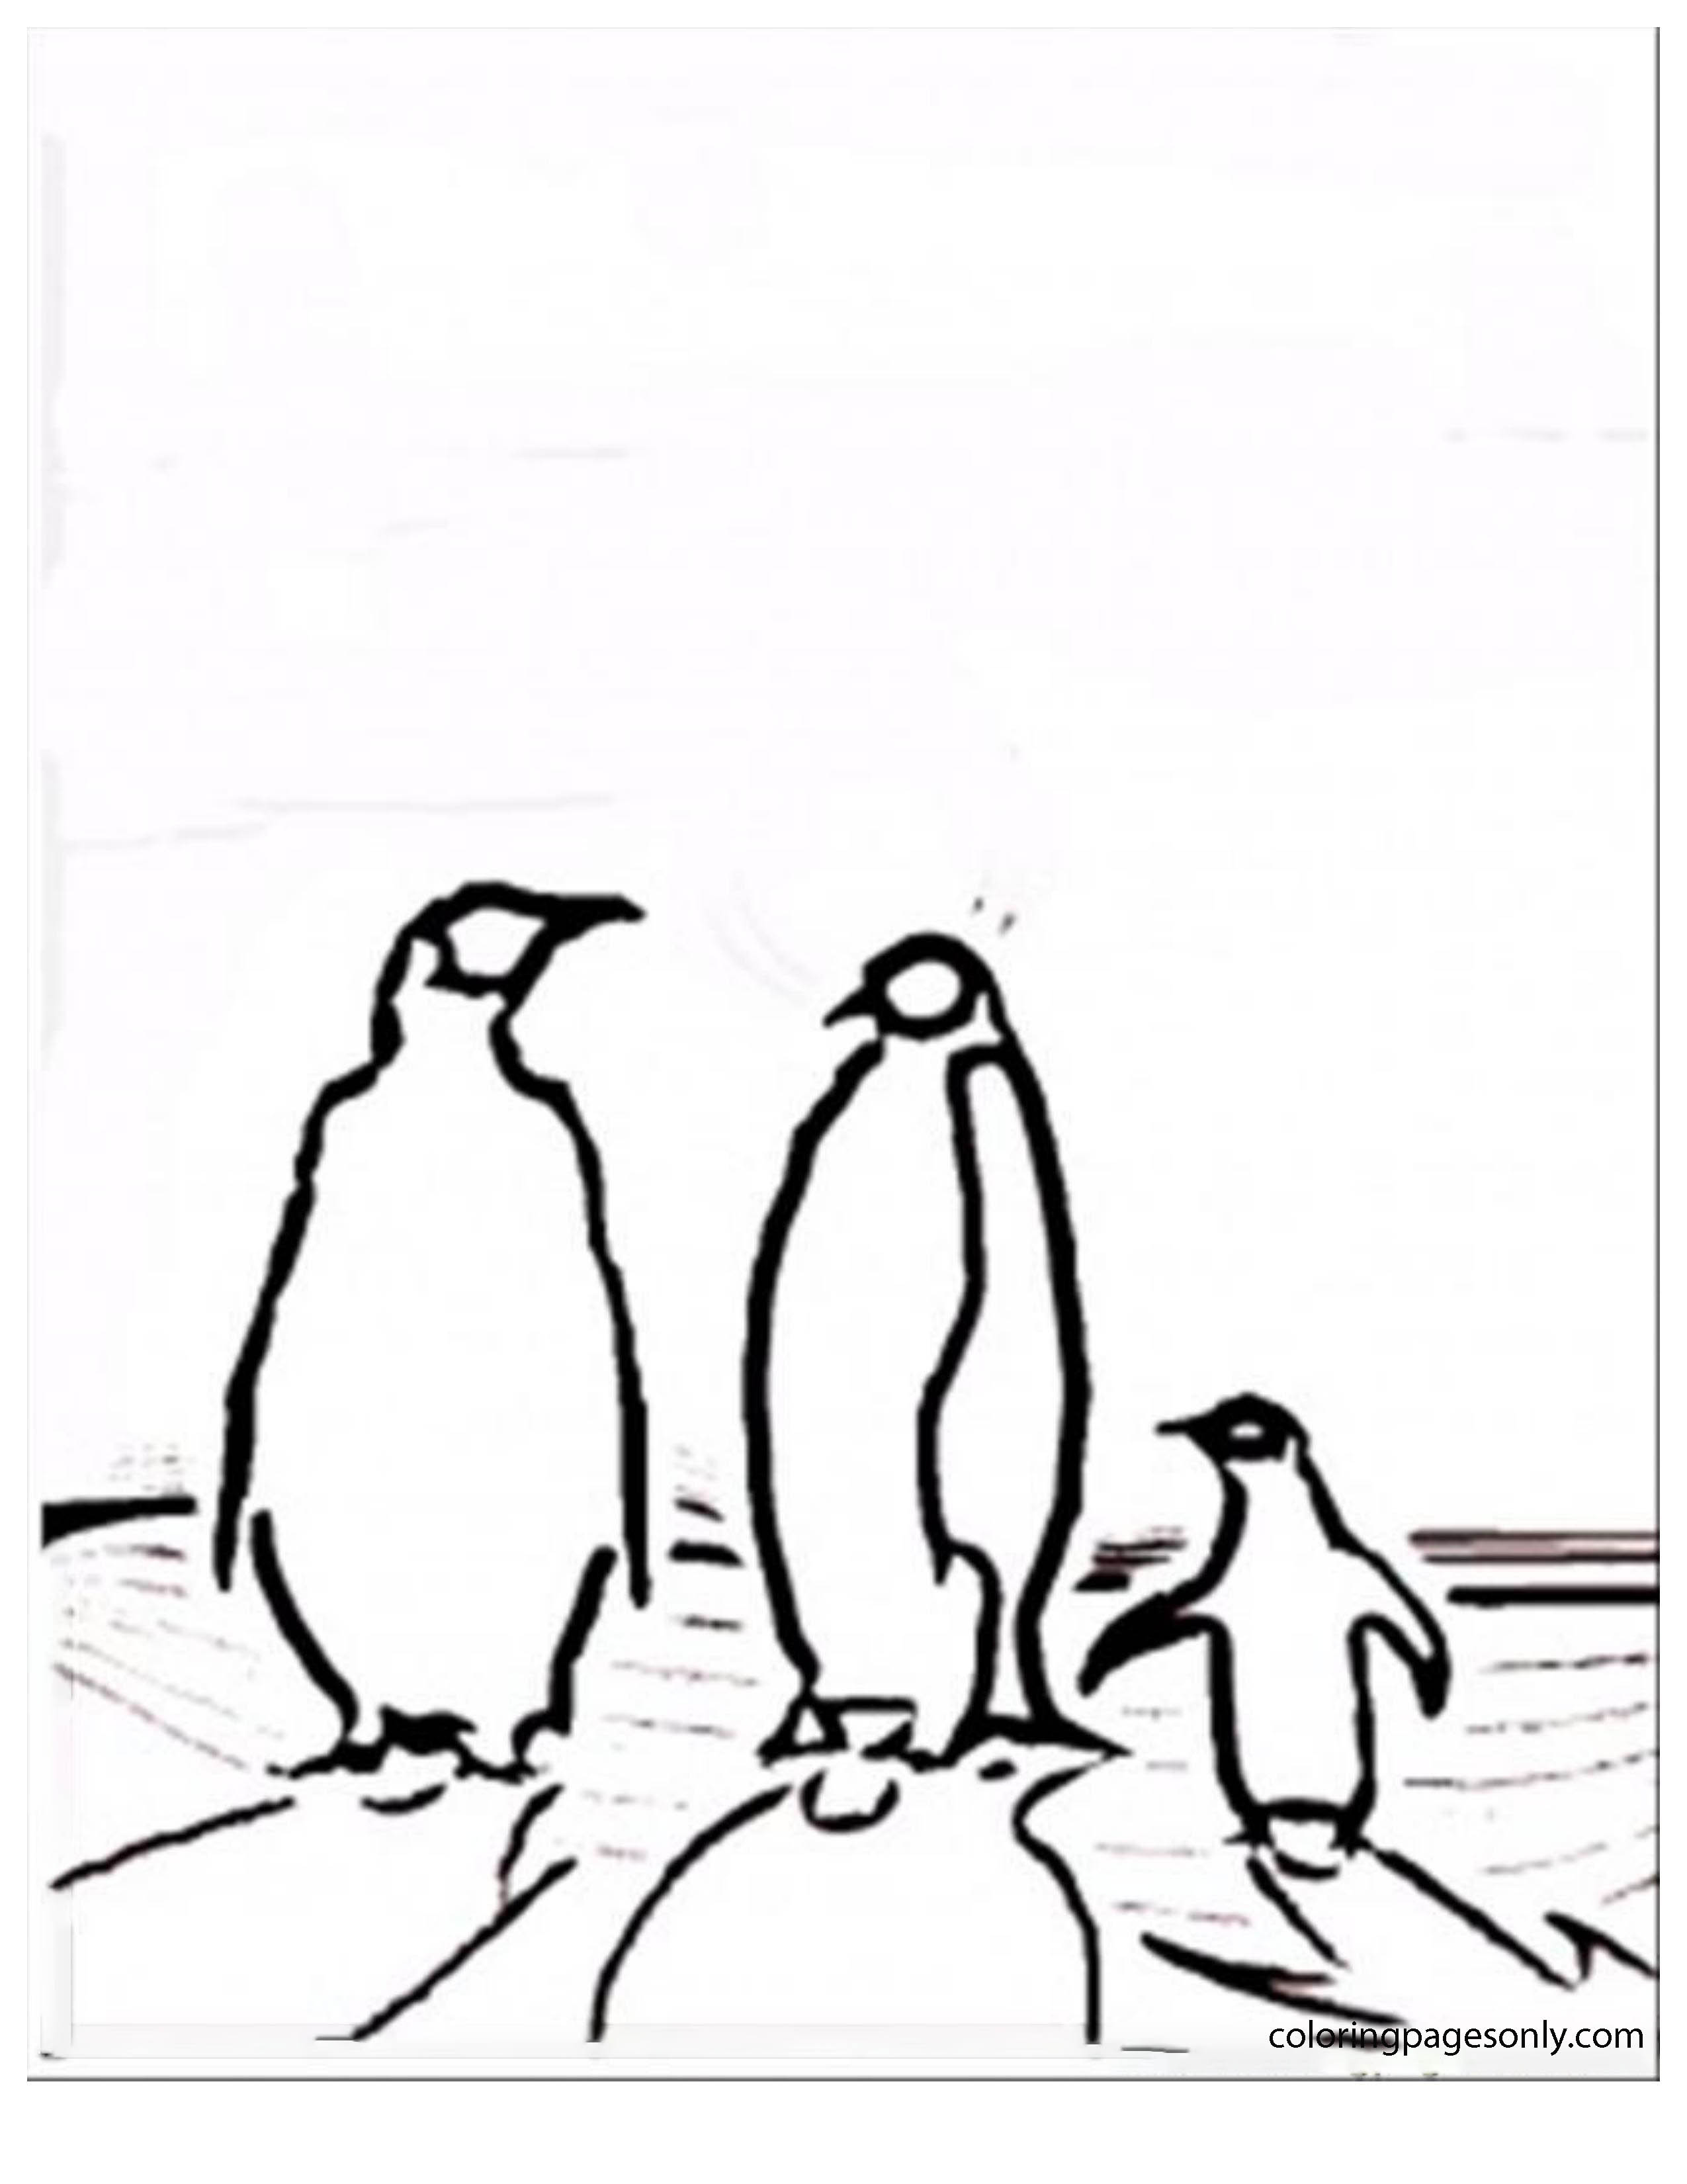 Familie van pinguïns uit de Noord- en Zuidpool